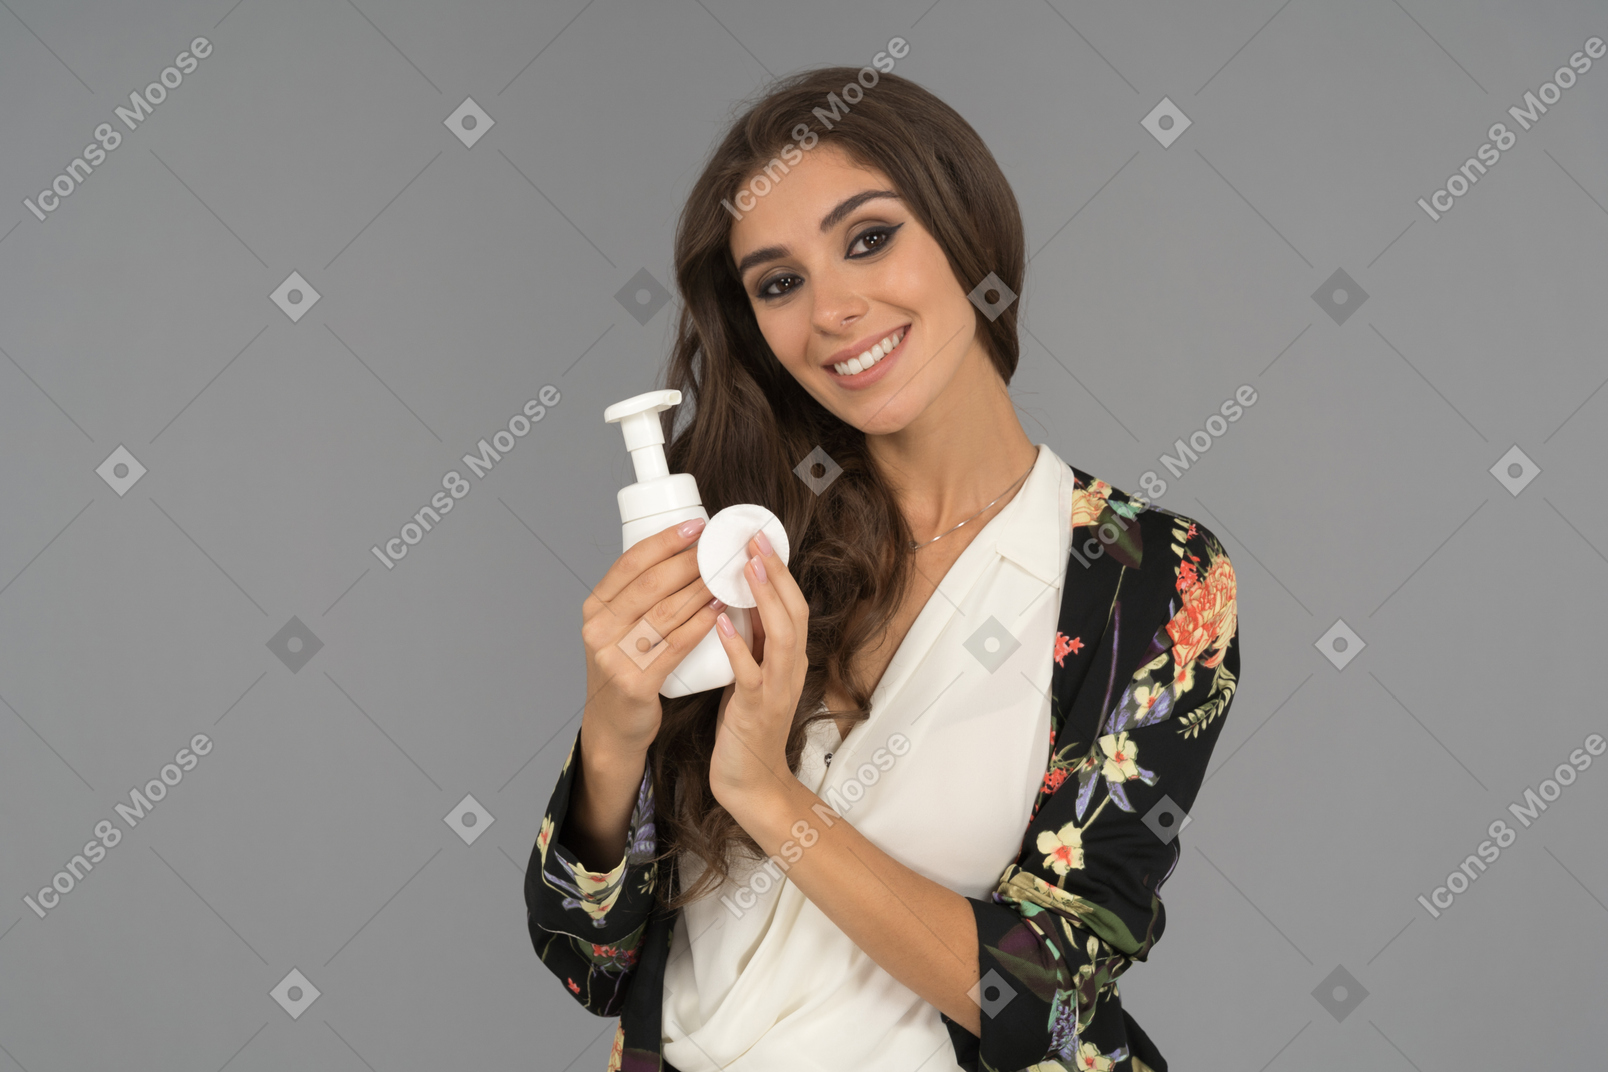 Une belle femme avec un sourire radieux annonçant un nouveau produit de beauté